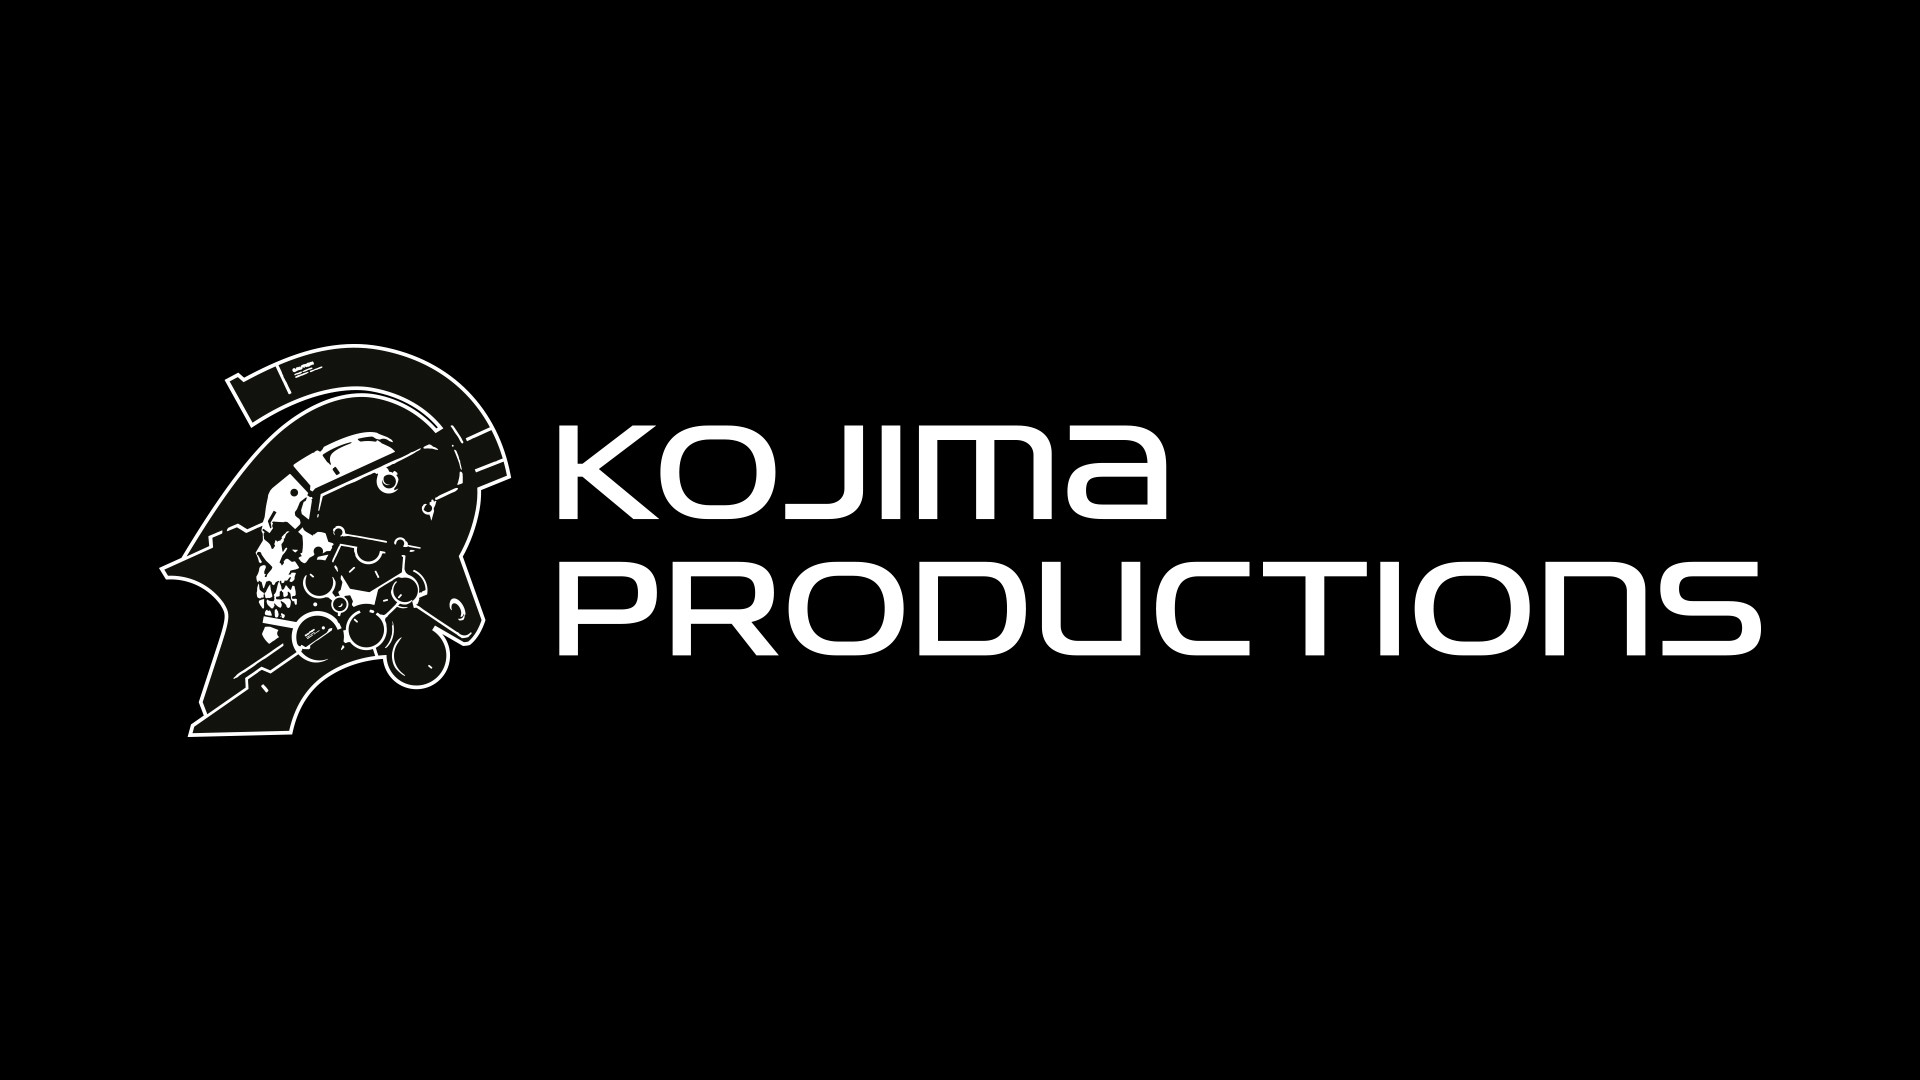 Il team di Xbox Game Studios visita Kojima Productions a Tokyo per iniziare un "viaggio emozionante".